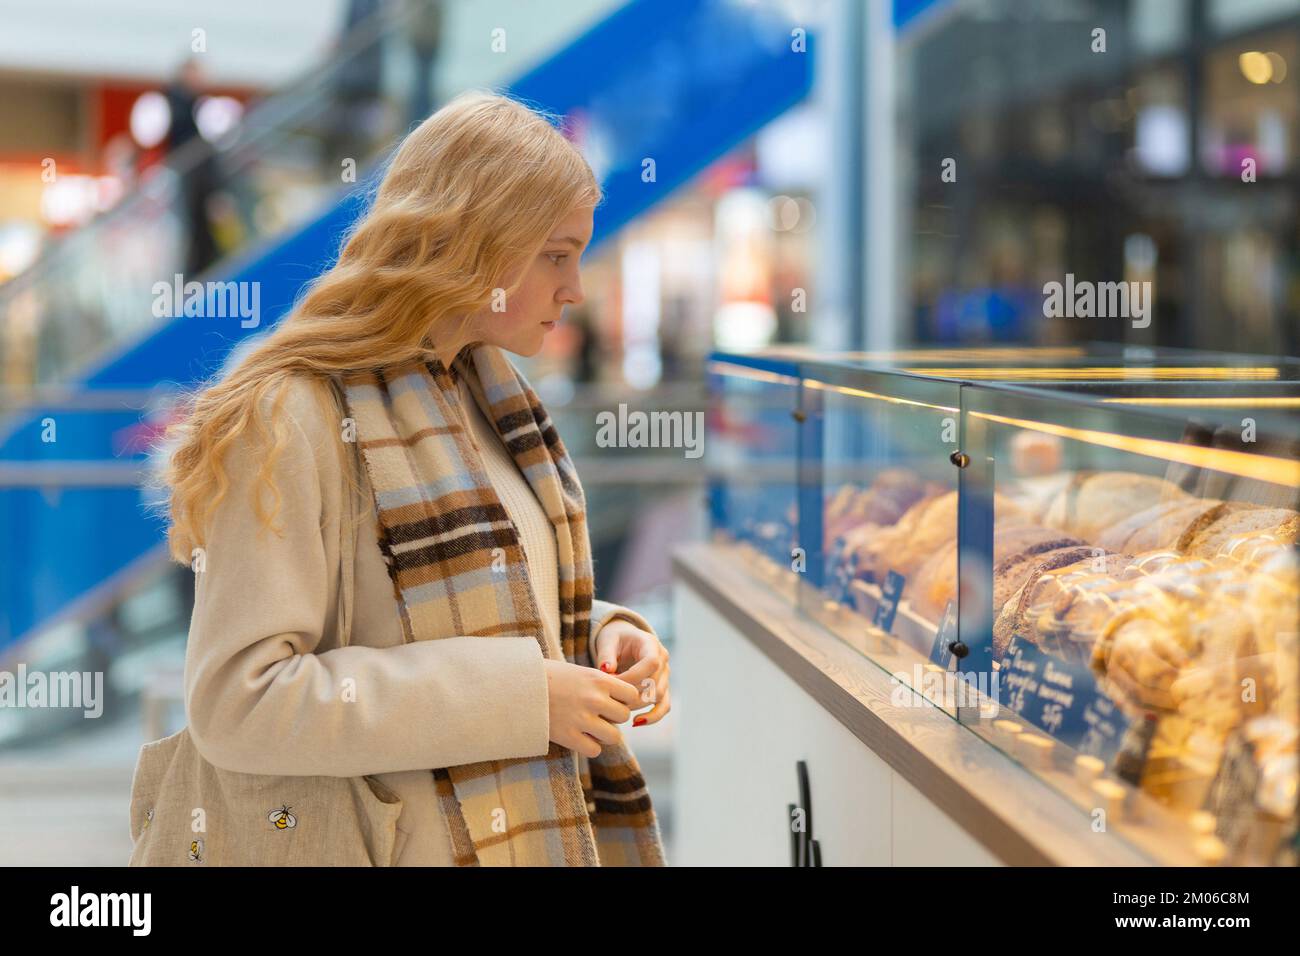 Eine Frau in weißem Mantel und Schal, die auf die Bäckerei mit verschiedenen Kuchenstücken schaut. Konsumerismus, gesunde Lebensmittelkonzepte. Stockfoto